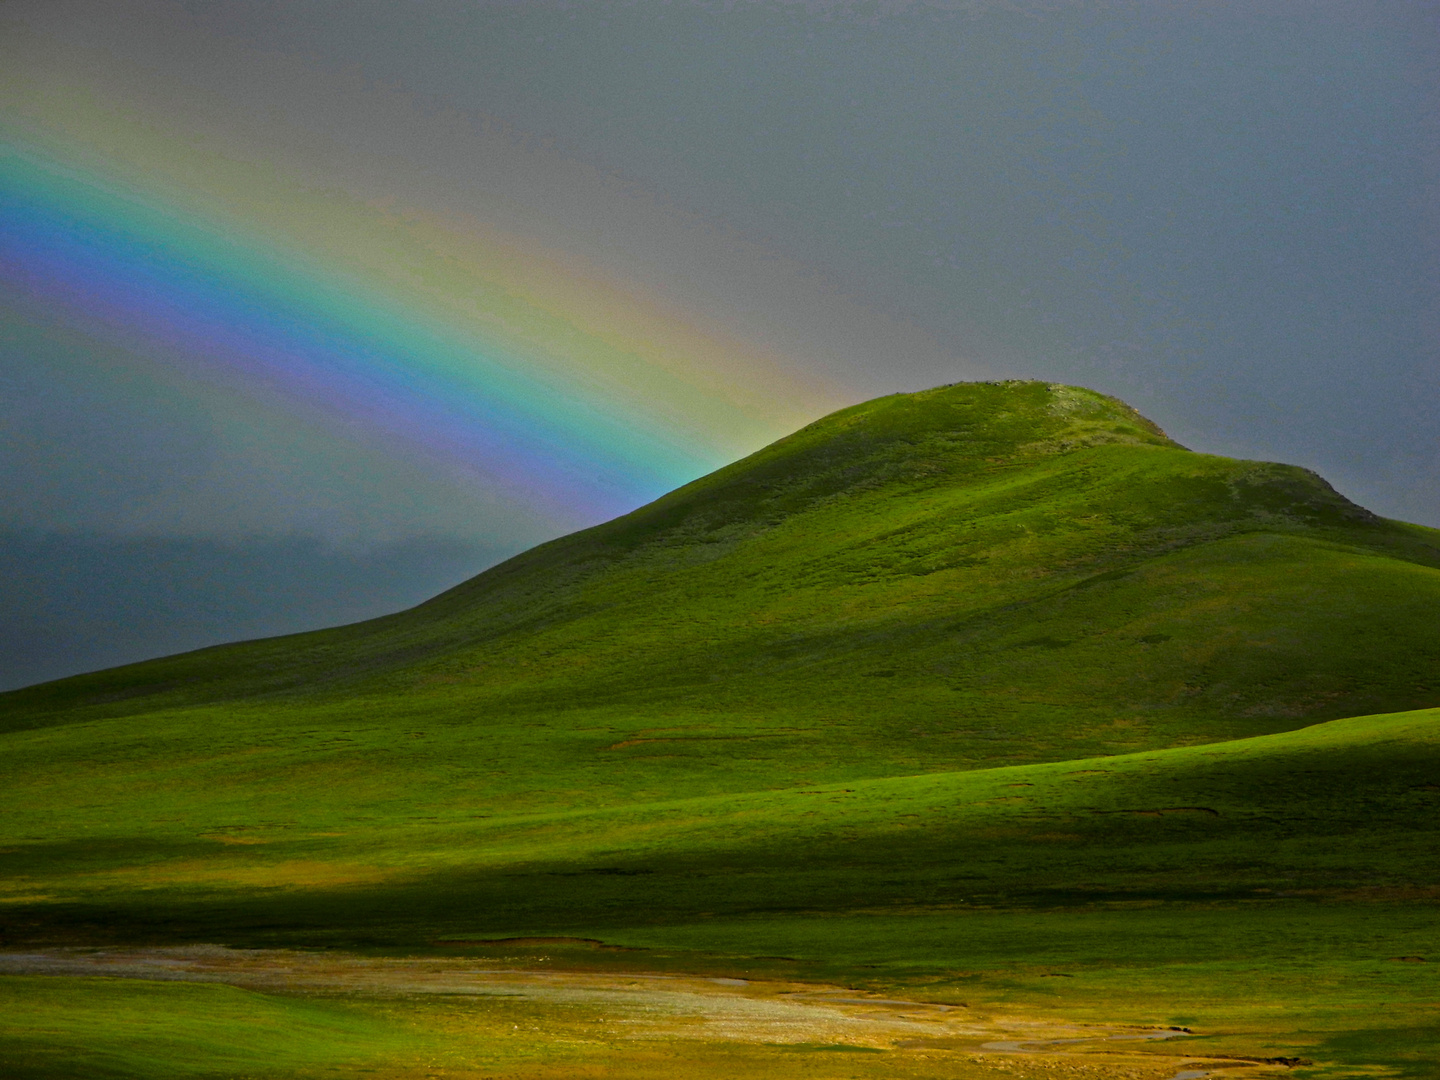 "Regenbogen über Tibet"